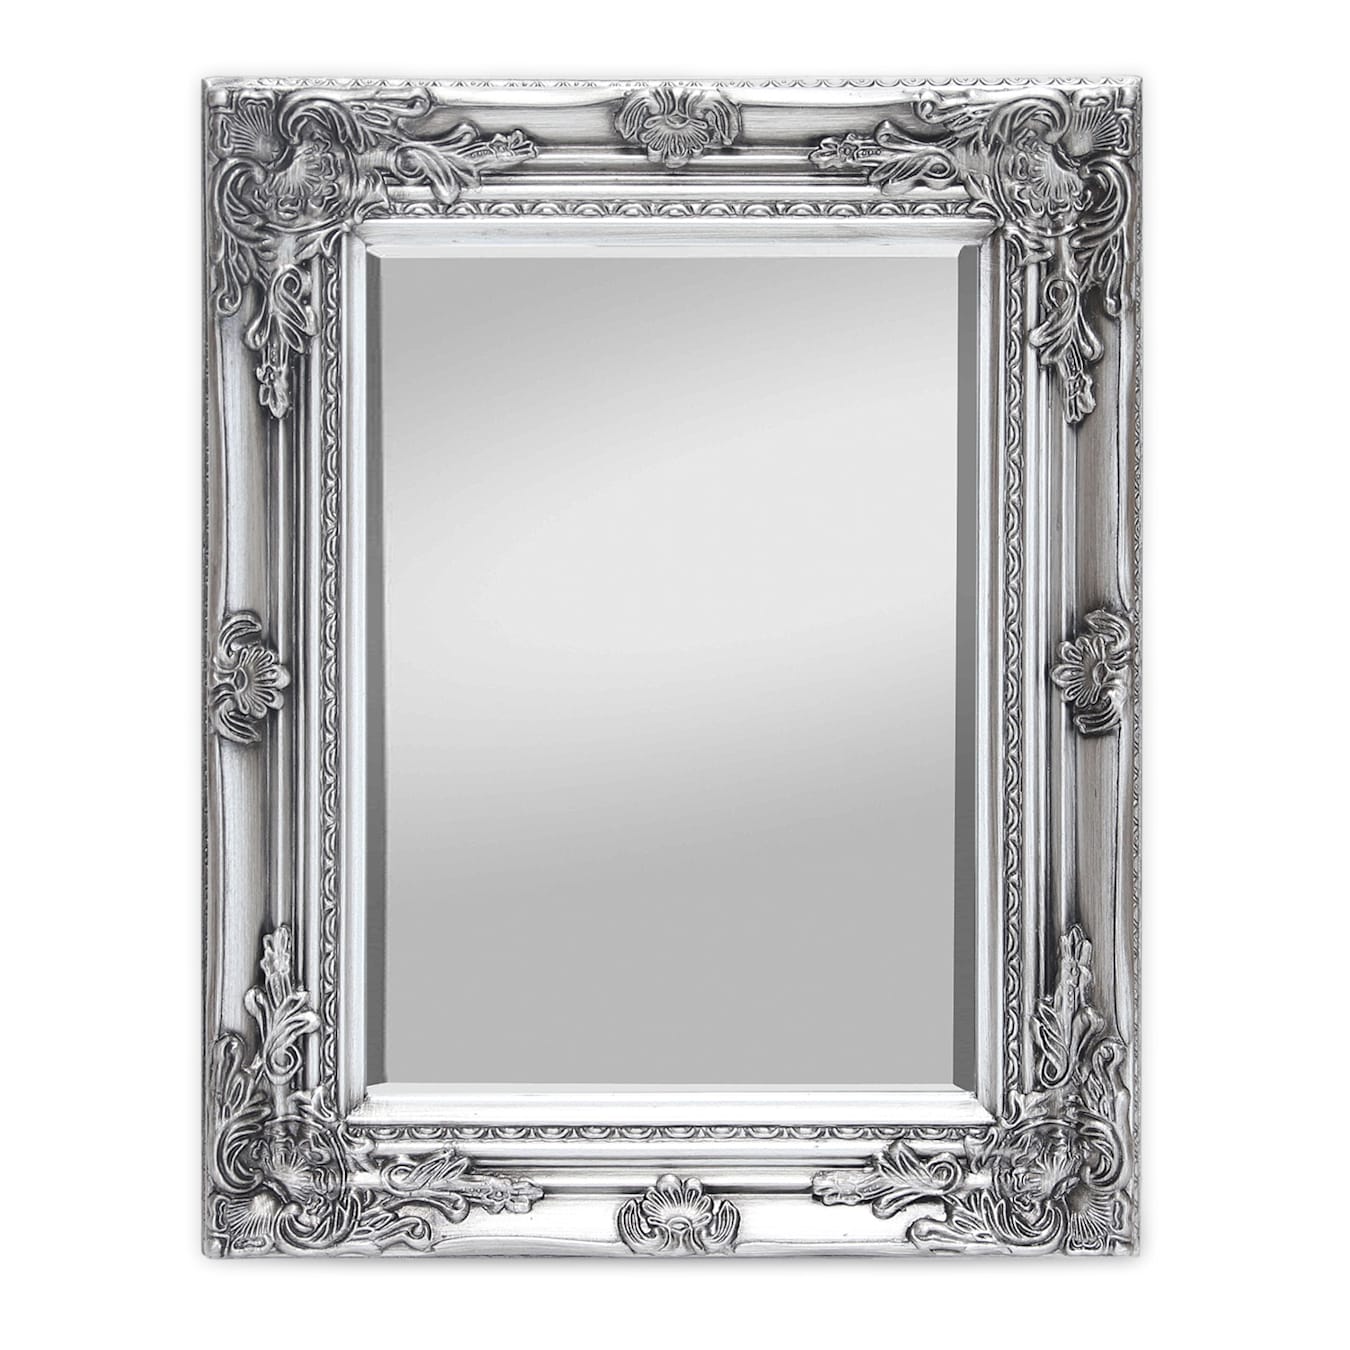 Ipswich Specchio da parete, rettangolare, Formato orizzontale o verticale, Dimensioni: 53 x 42 x 3,5 cm, Cornice in legno massiccio, Stile barocco